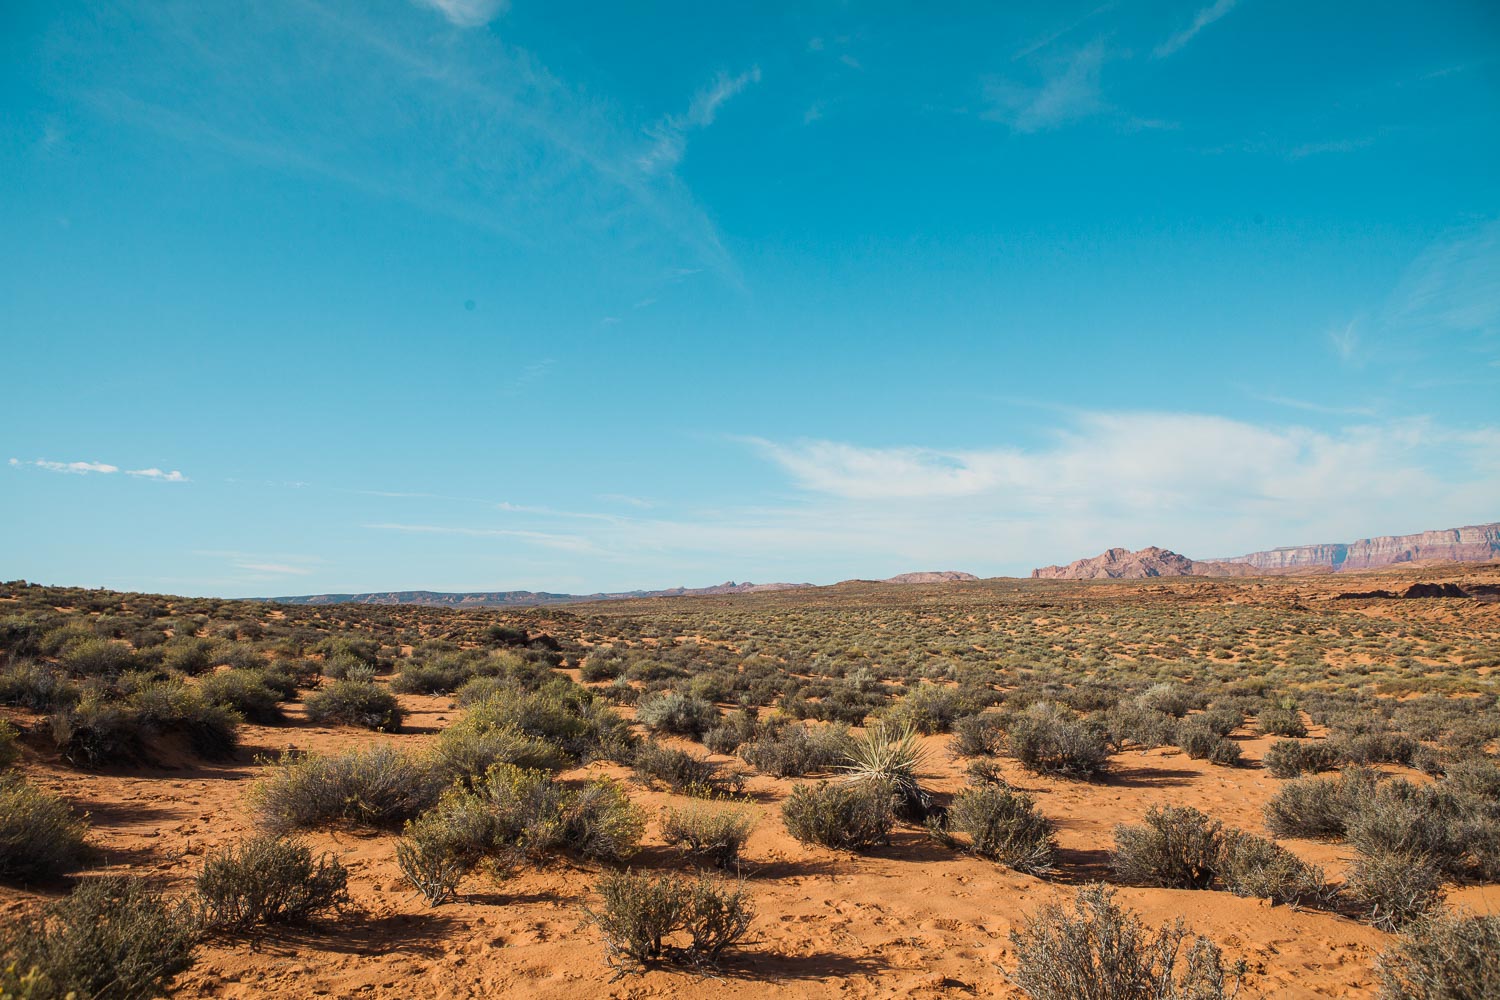 The Moab Desert of Utah